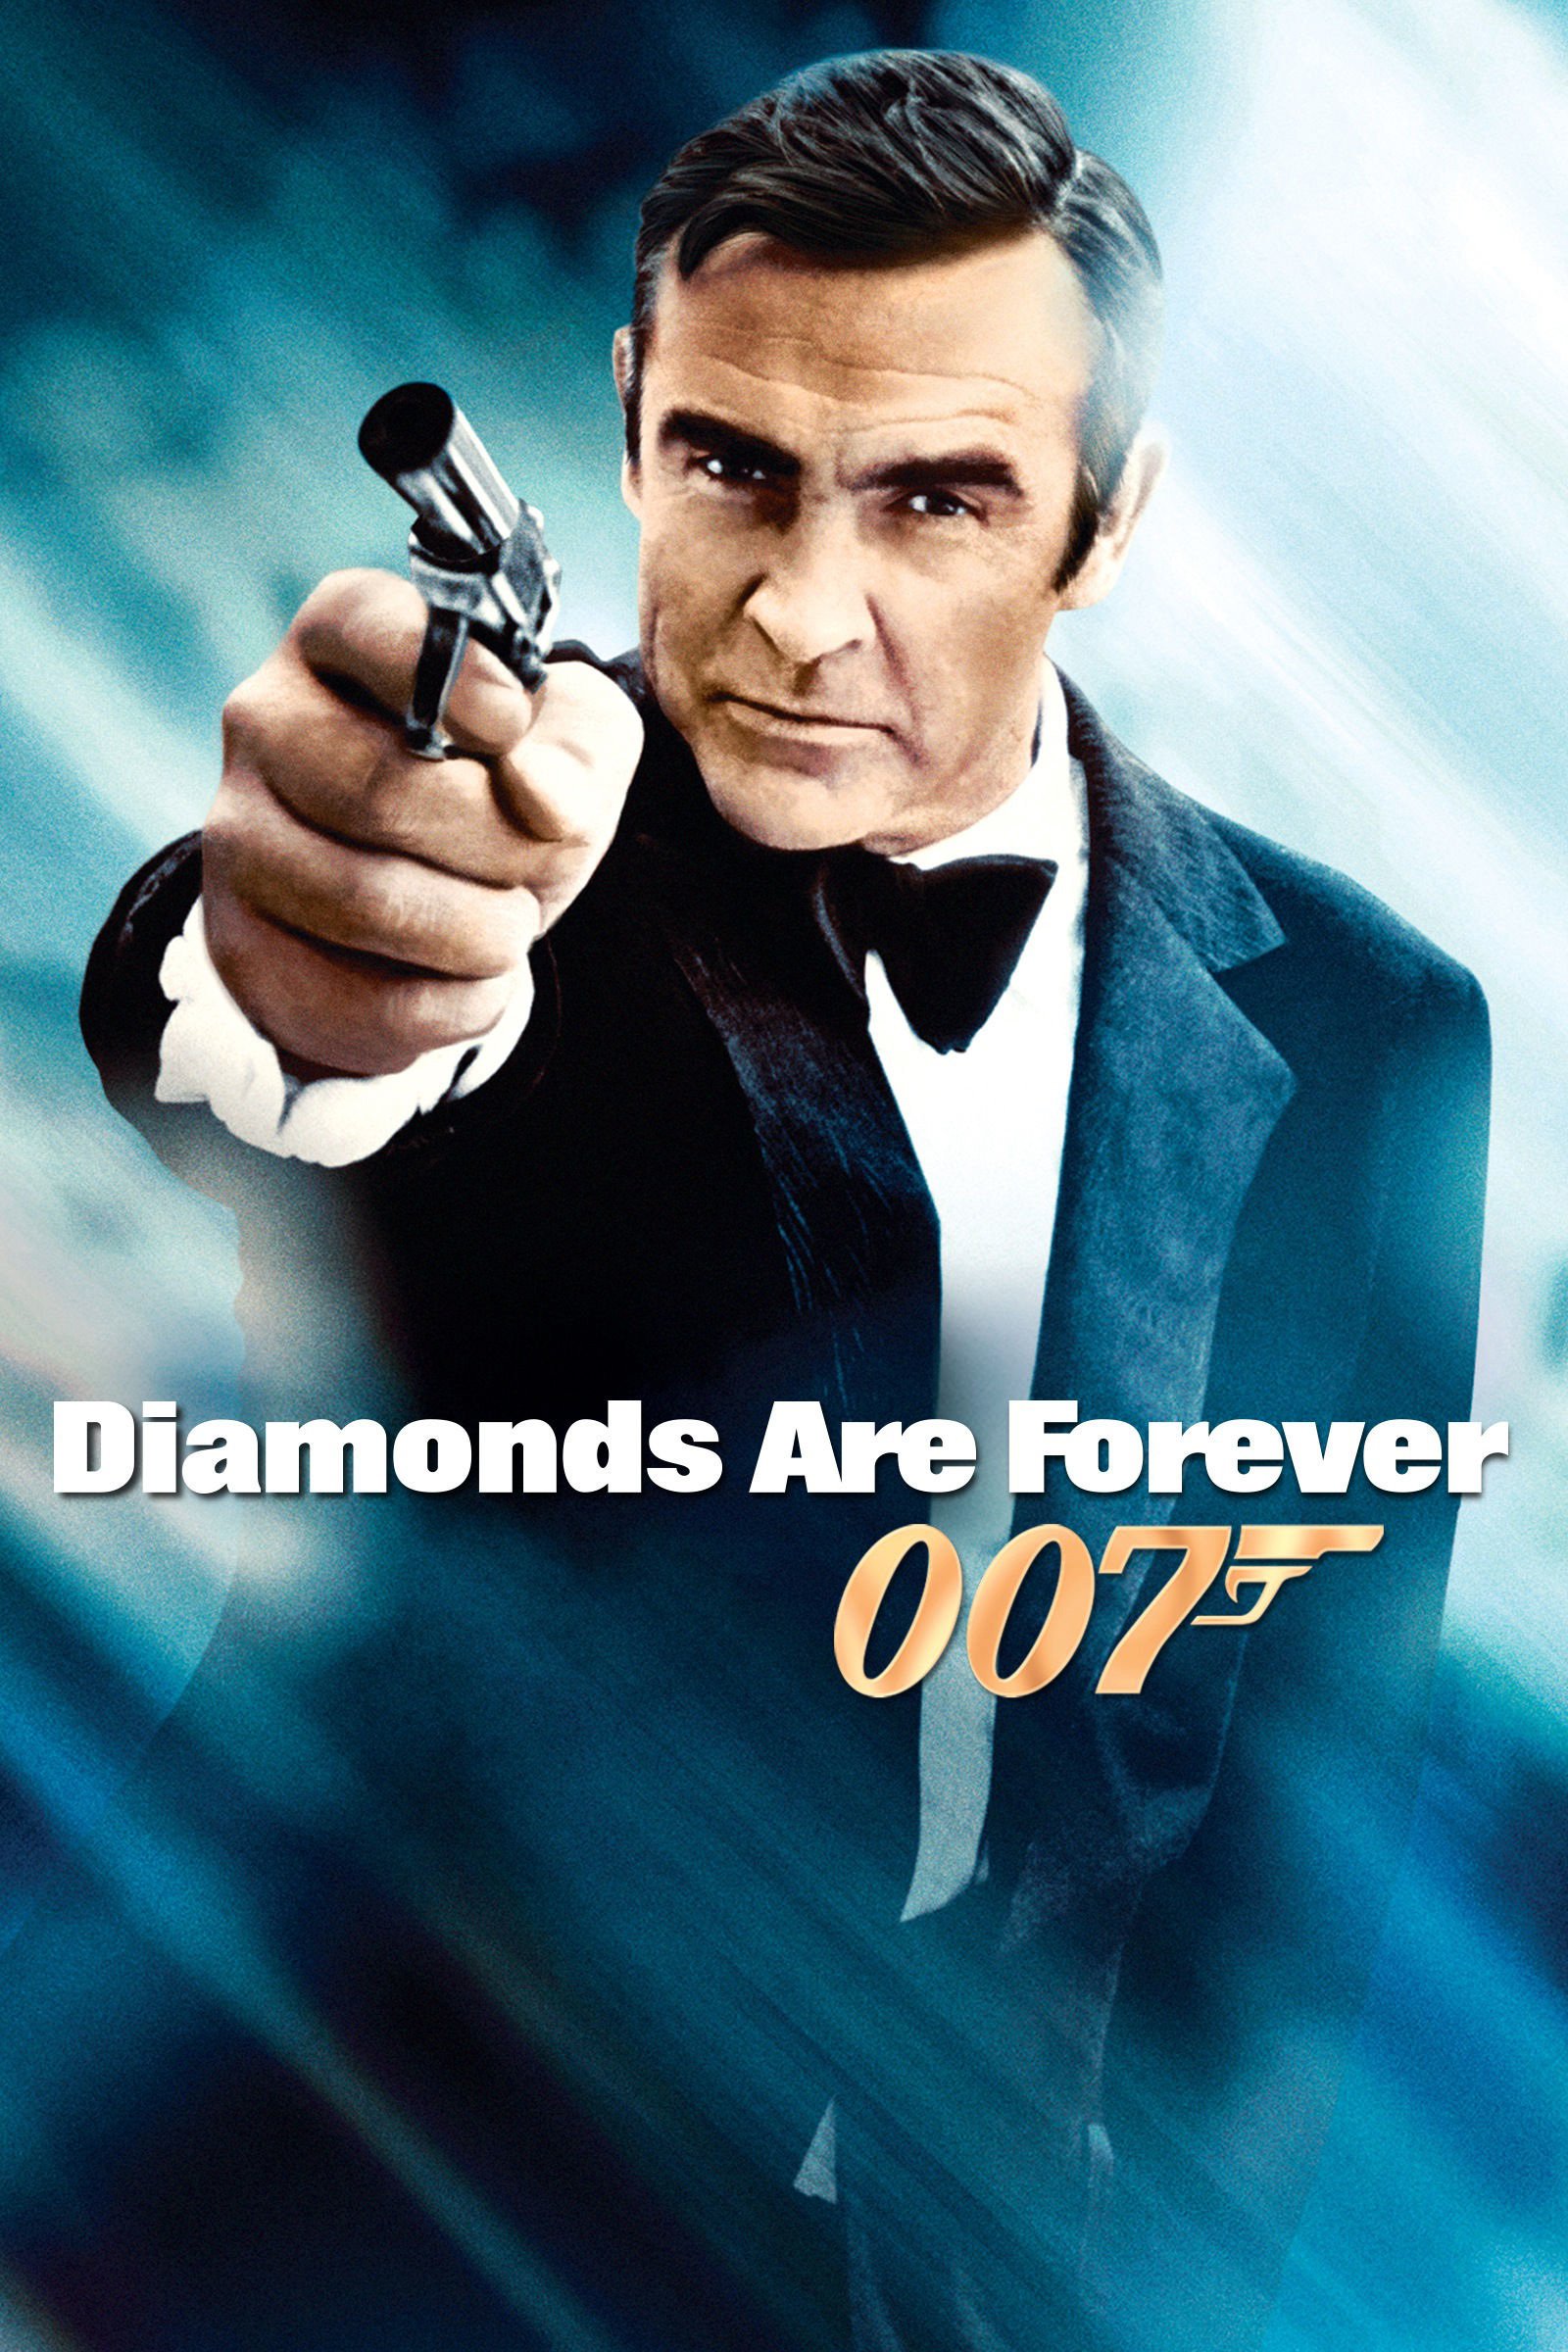 James Bond - Gyémántok az örökkévalóságnak